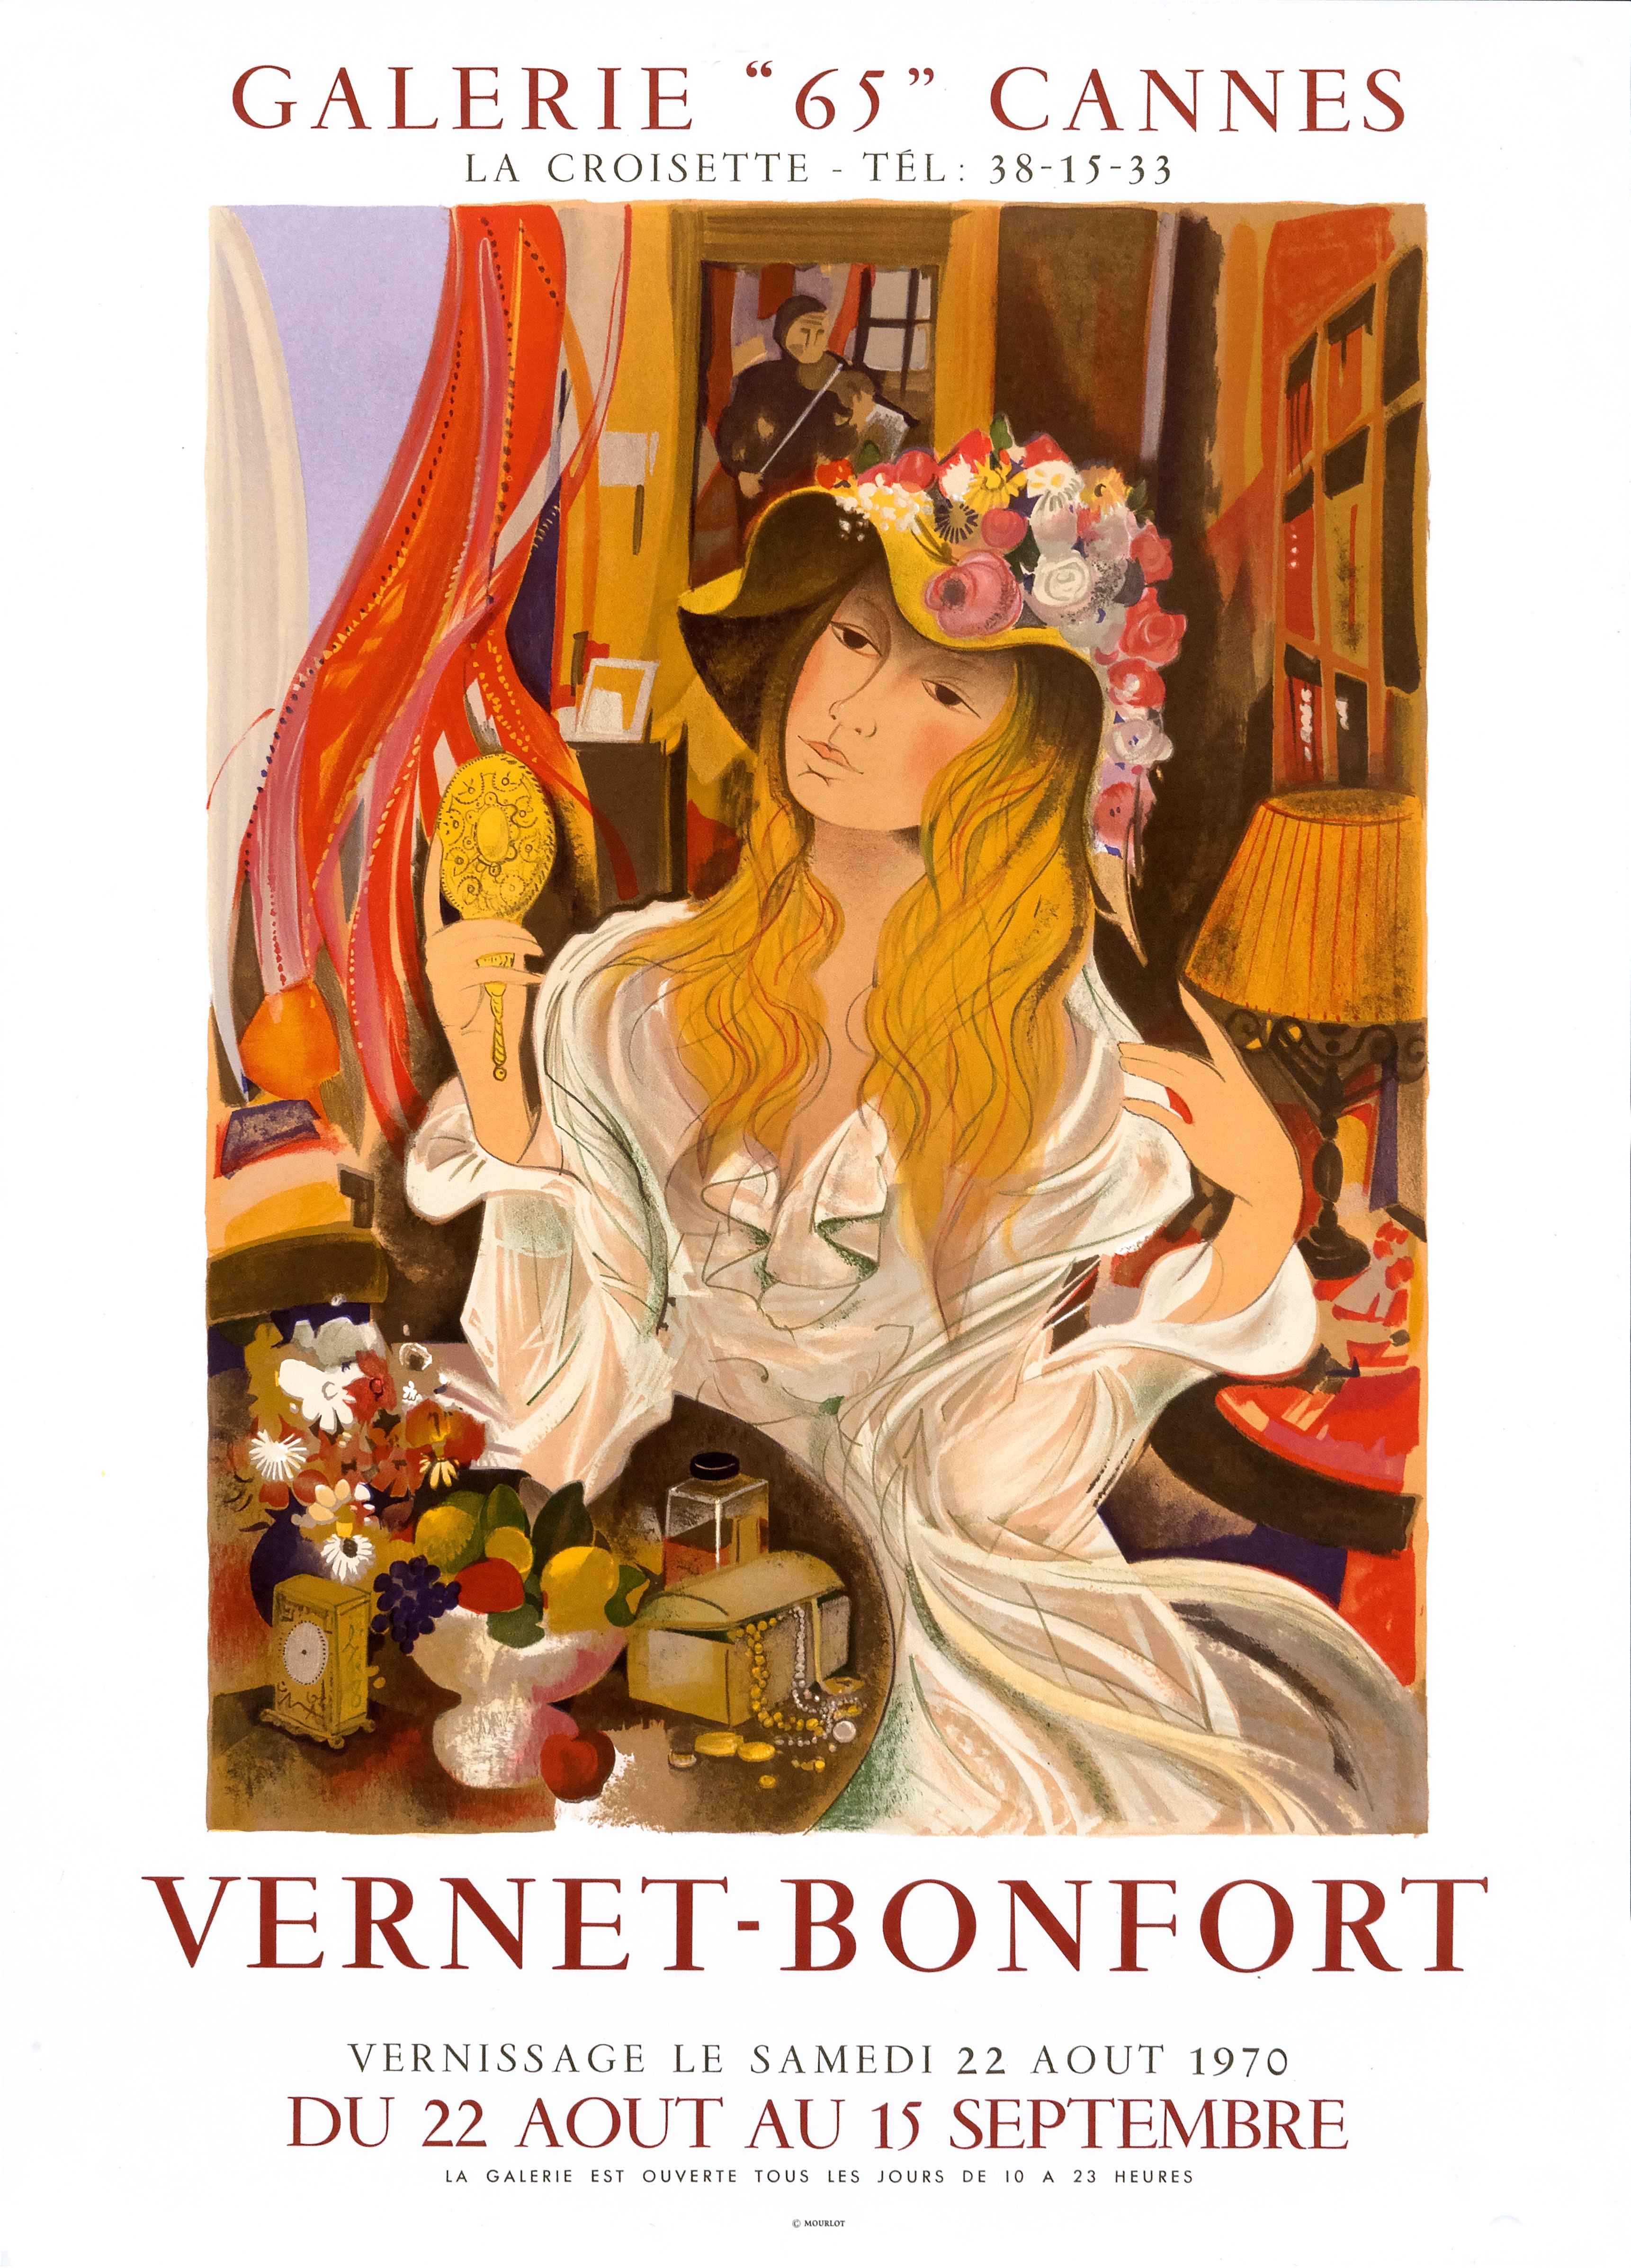 Robert Vernet-Bonfort Figurative Print - "Vernet-Bonfort - Galerie 65 Cannes" Original Vintage Exhibition Poster